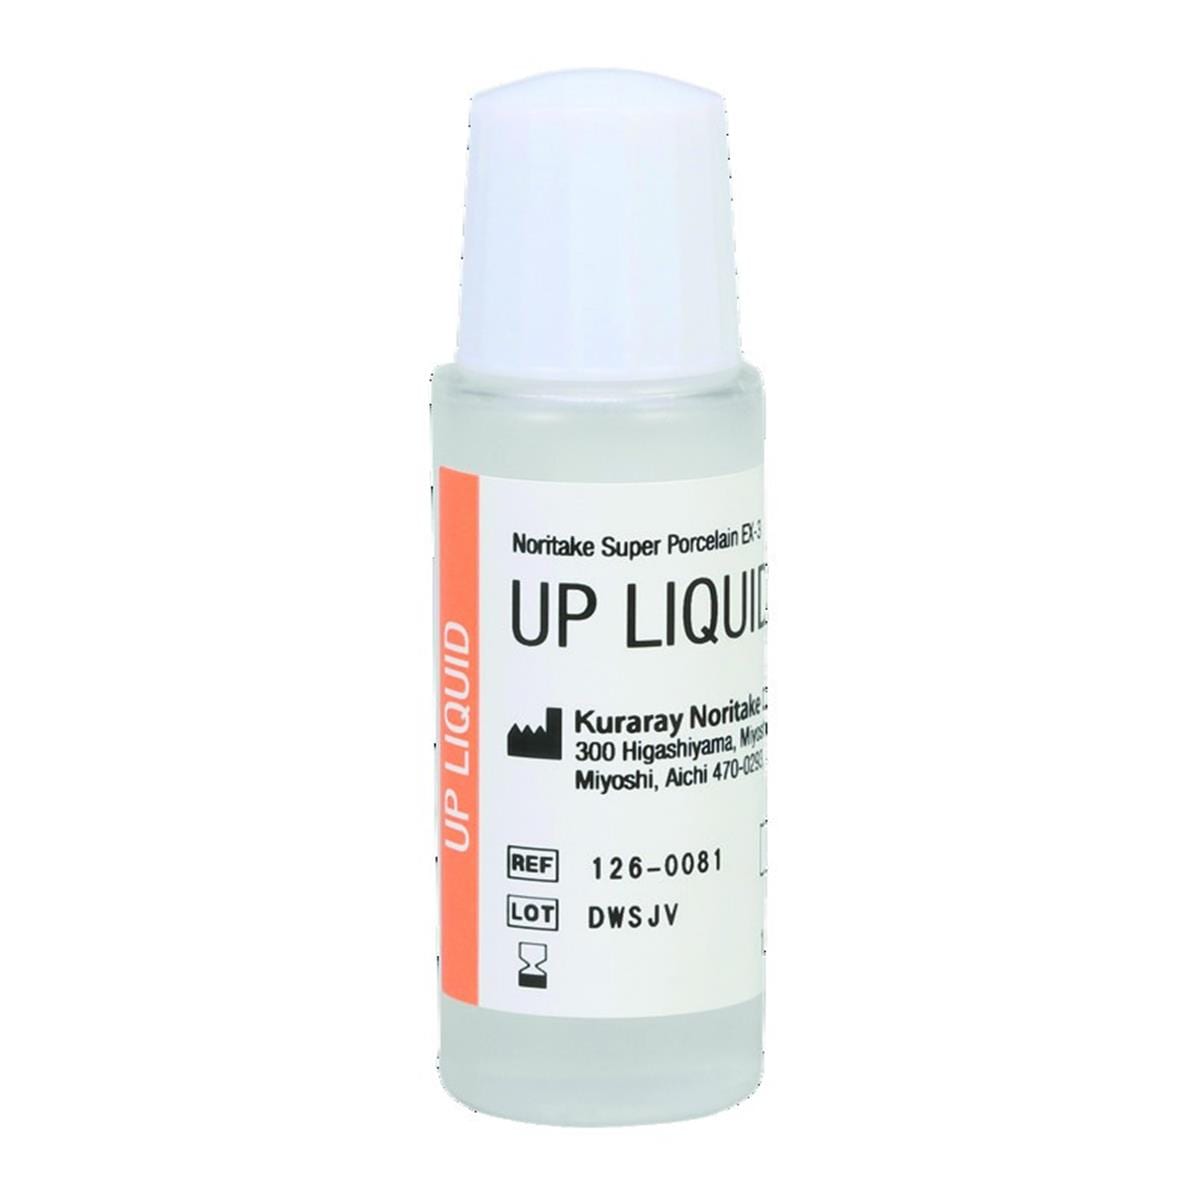 UP liquid KURARAY NORITAKE - Le flacon de 10ml